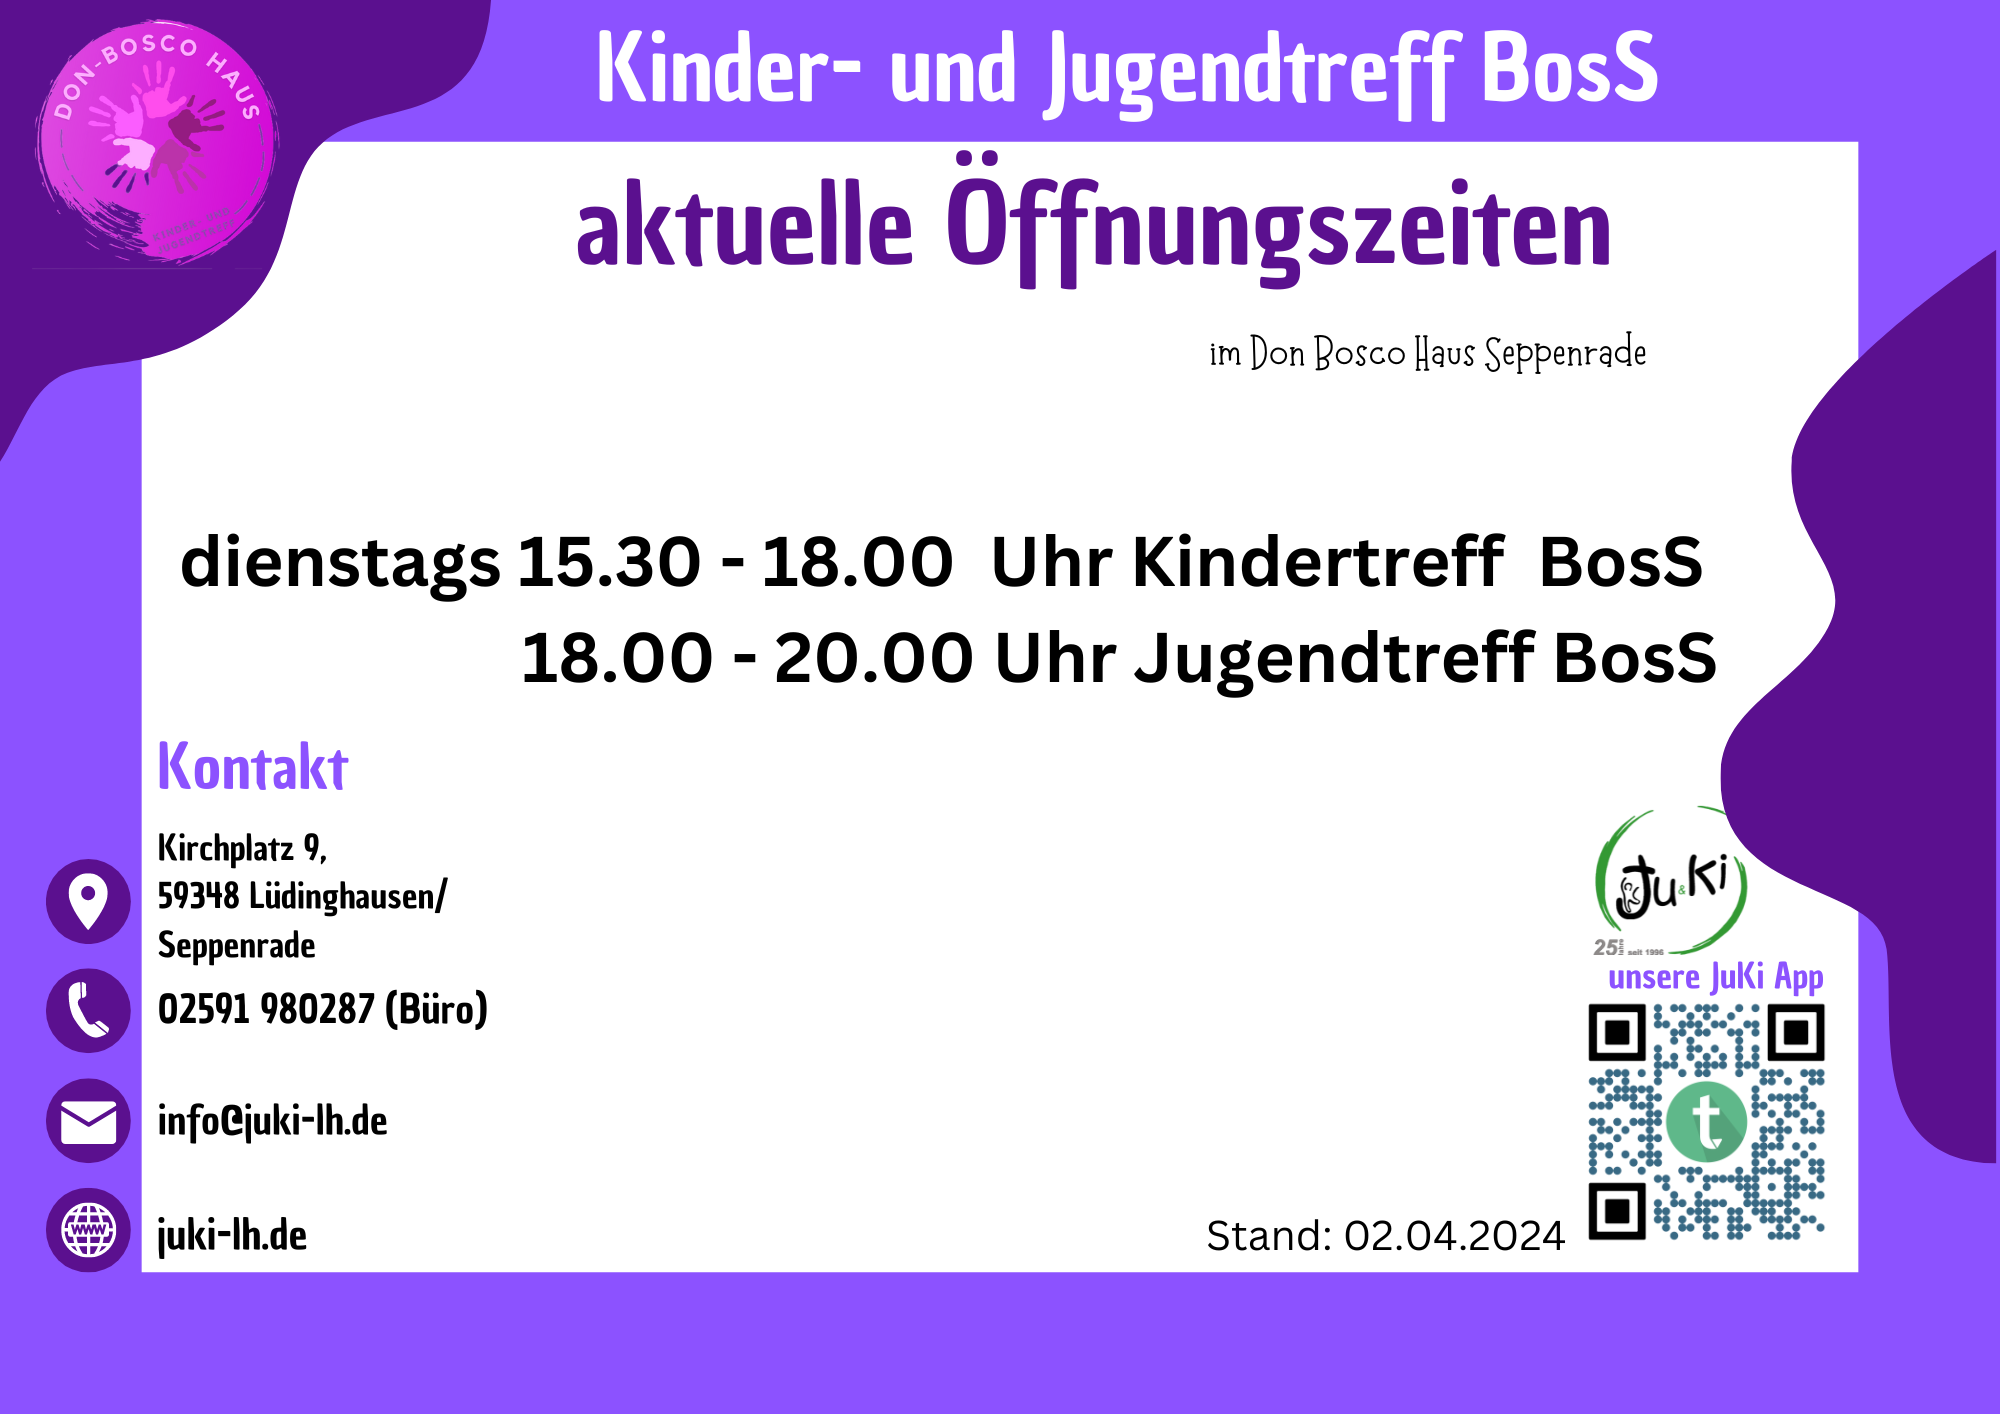 Aktuelle Öffnungszeiten im BosS:dienstags 15:30 - 18:00 Uhr Kindertreff